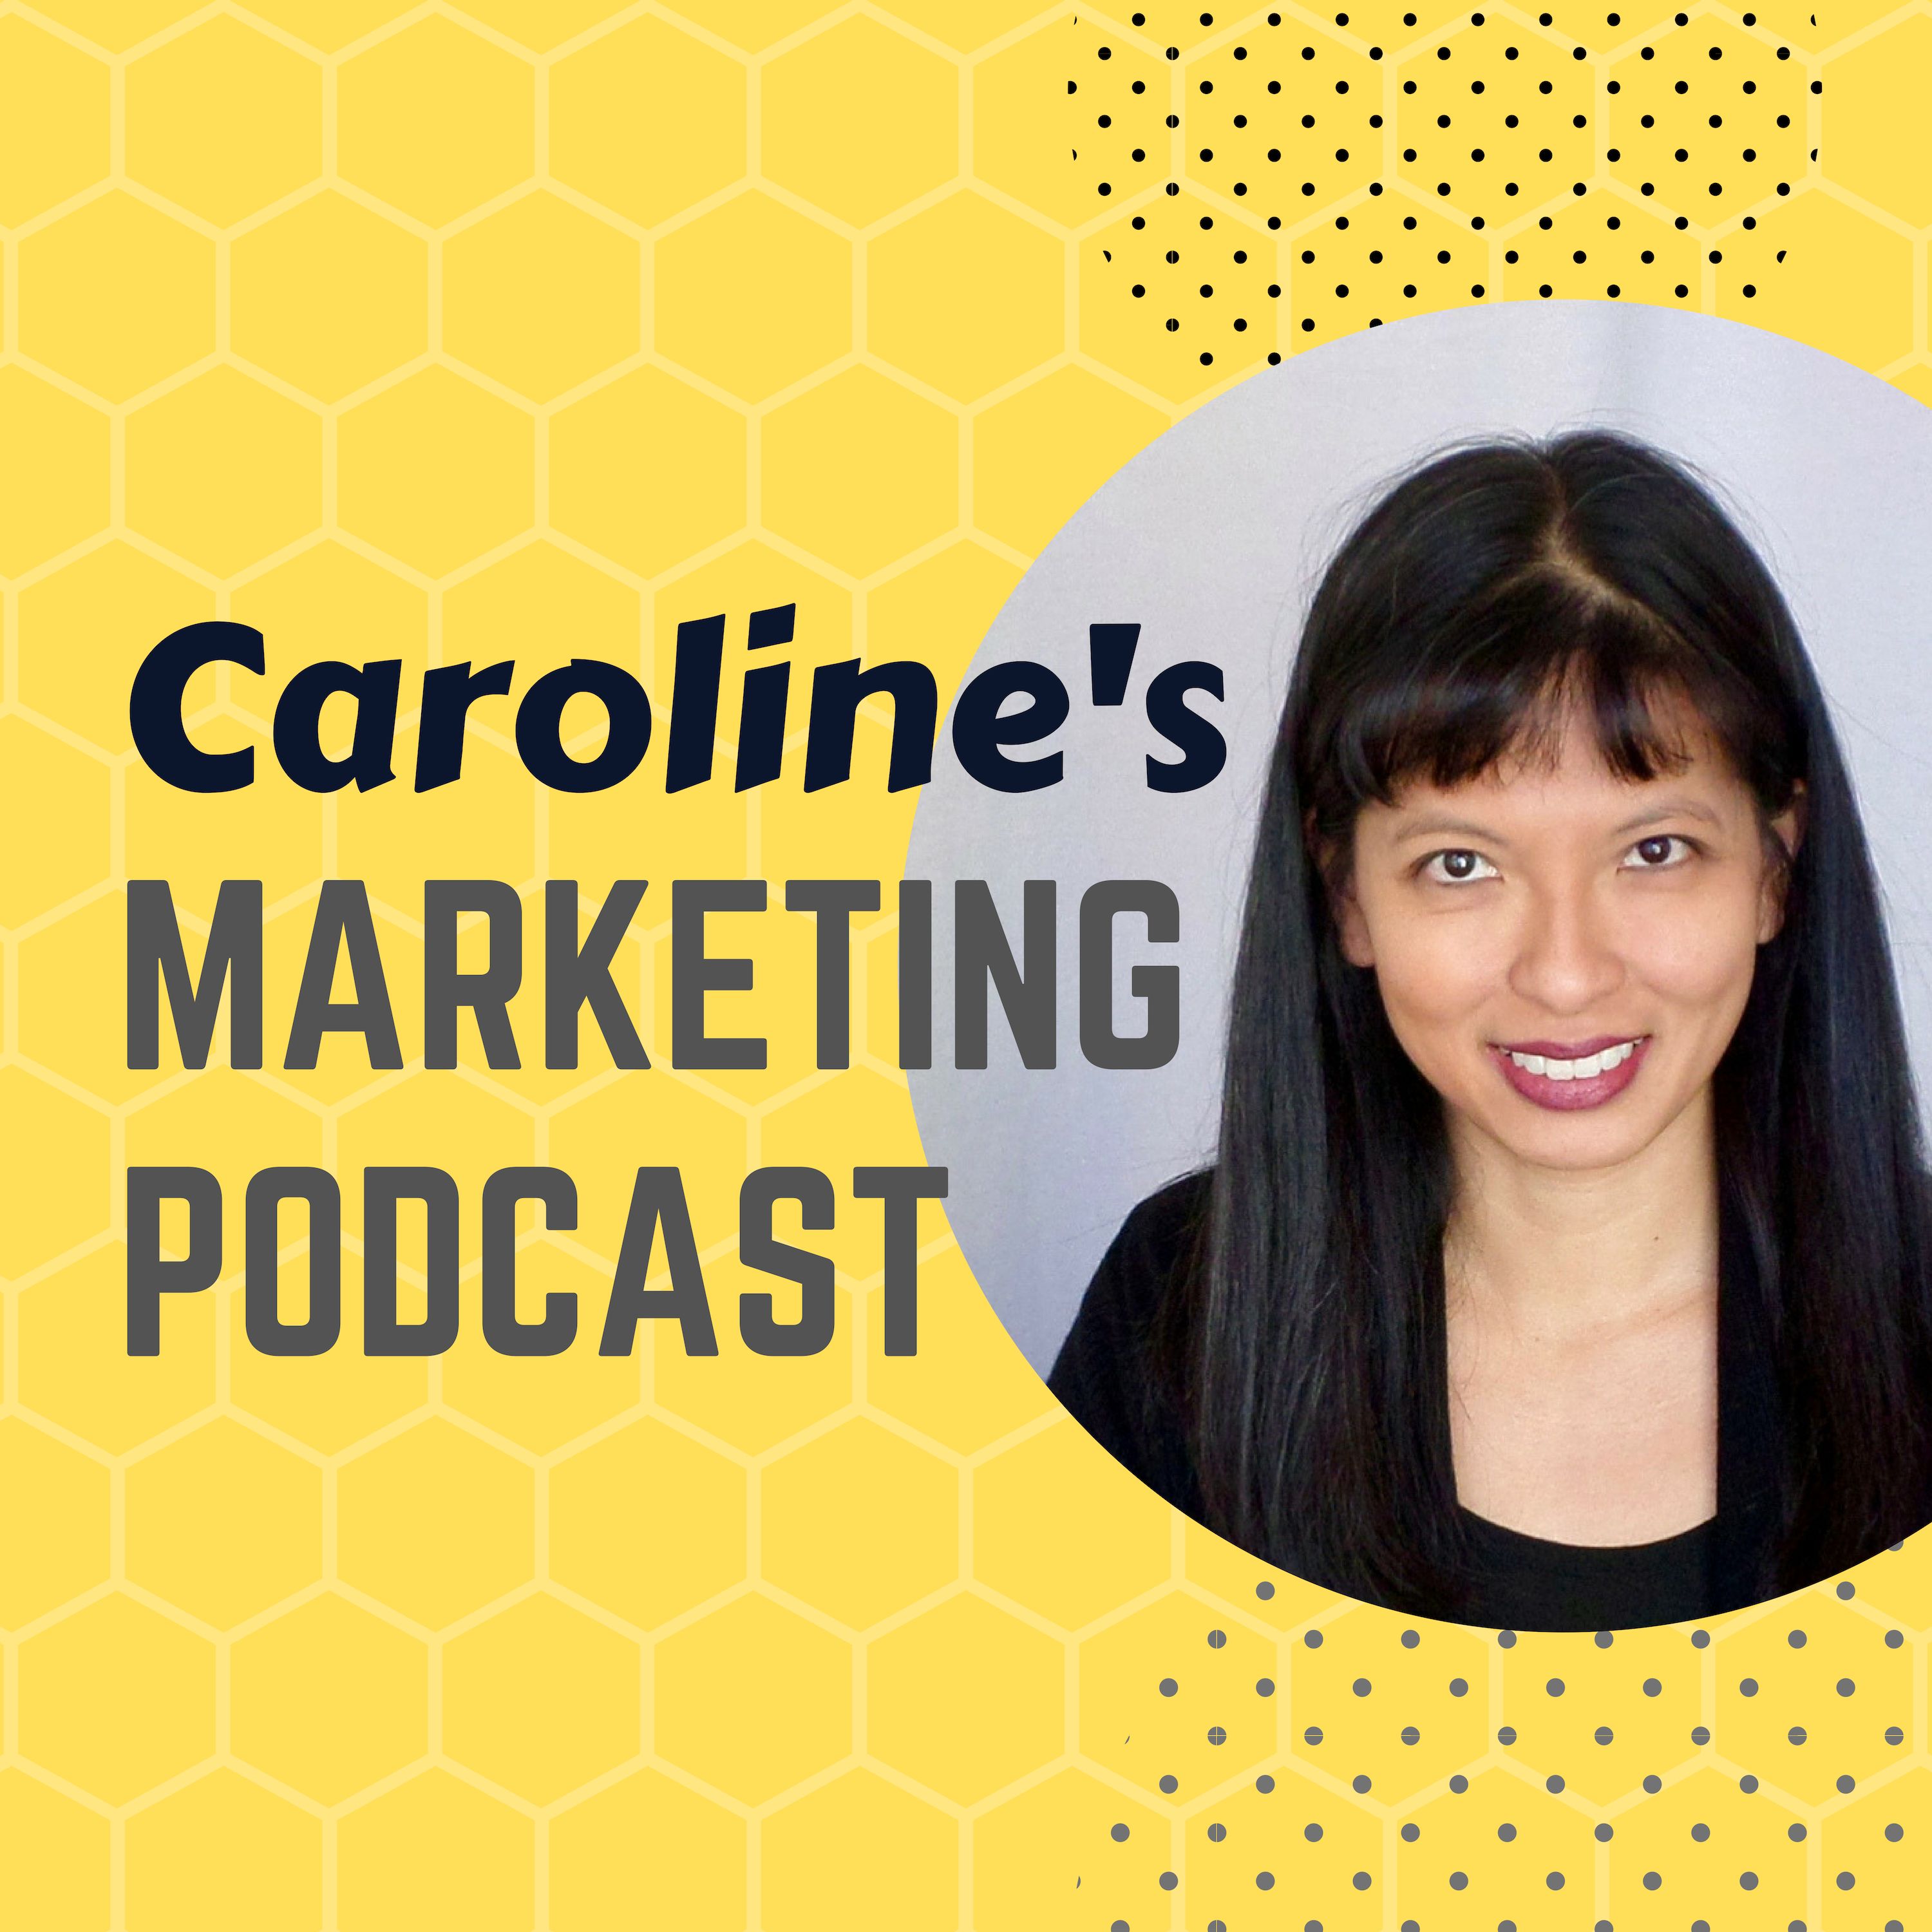 Caroline's Marketing Podcast